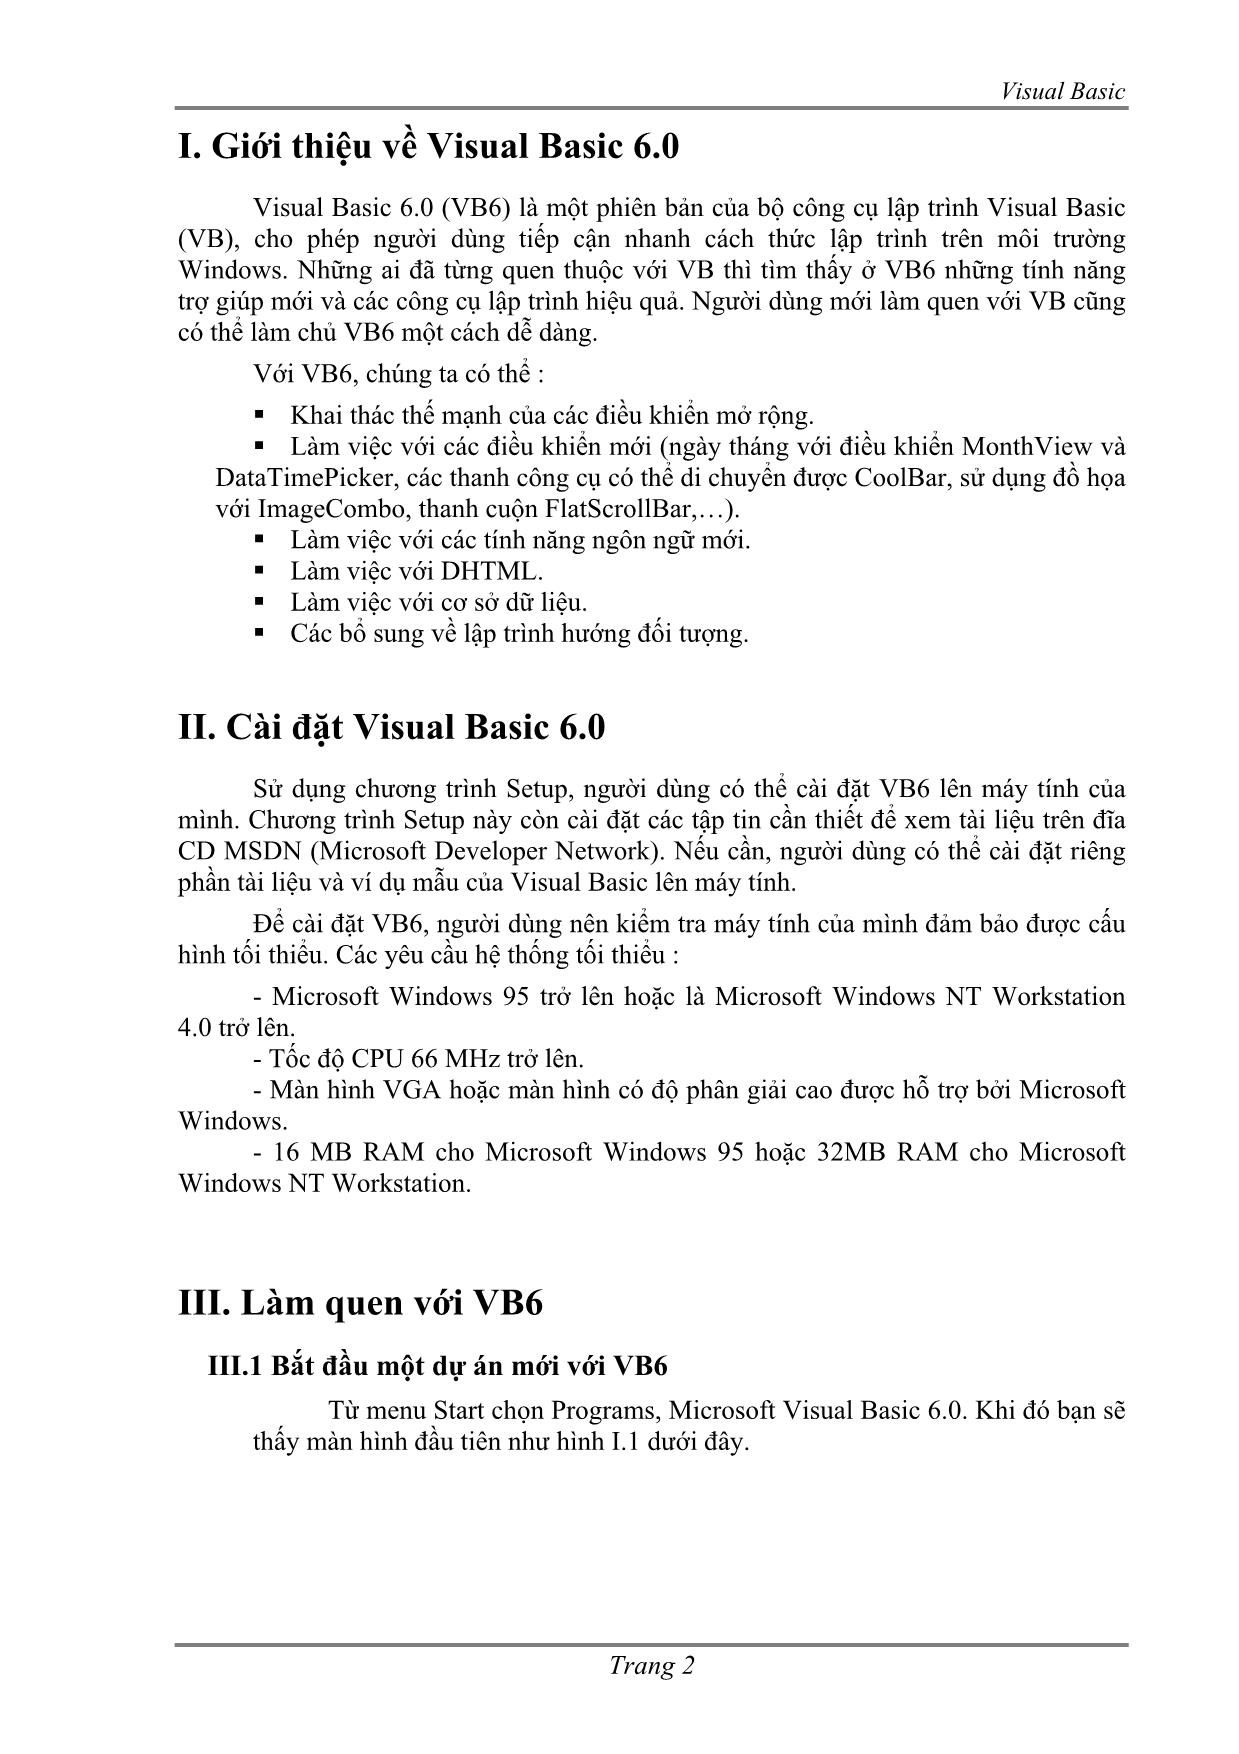 Lập trình Visual Basic 6.0 trang 2